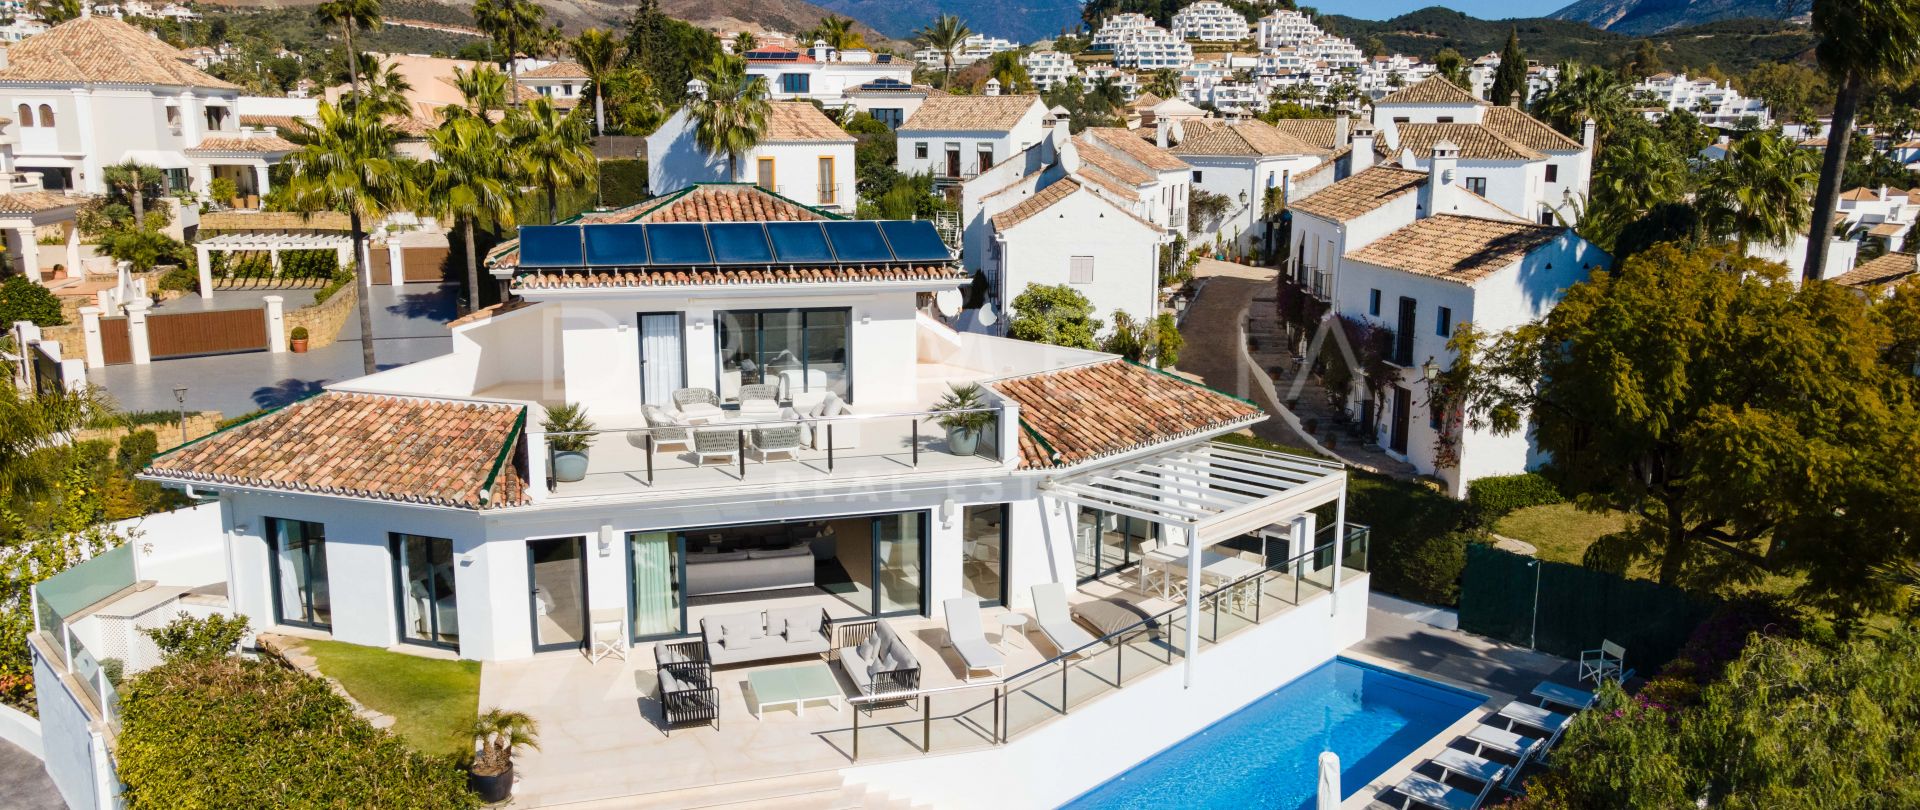 Elegante villa mediterránea moderna reformada en la hermosa Nueva Andalucía, Marbella